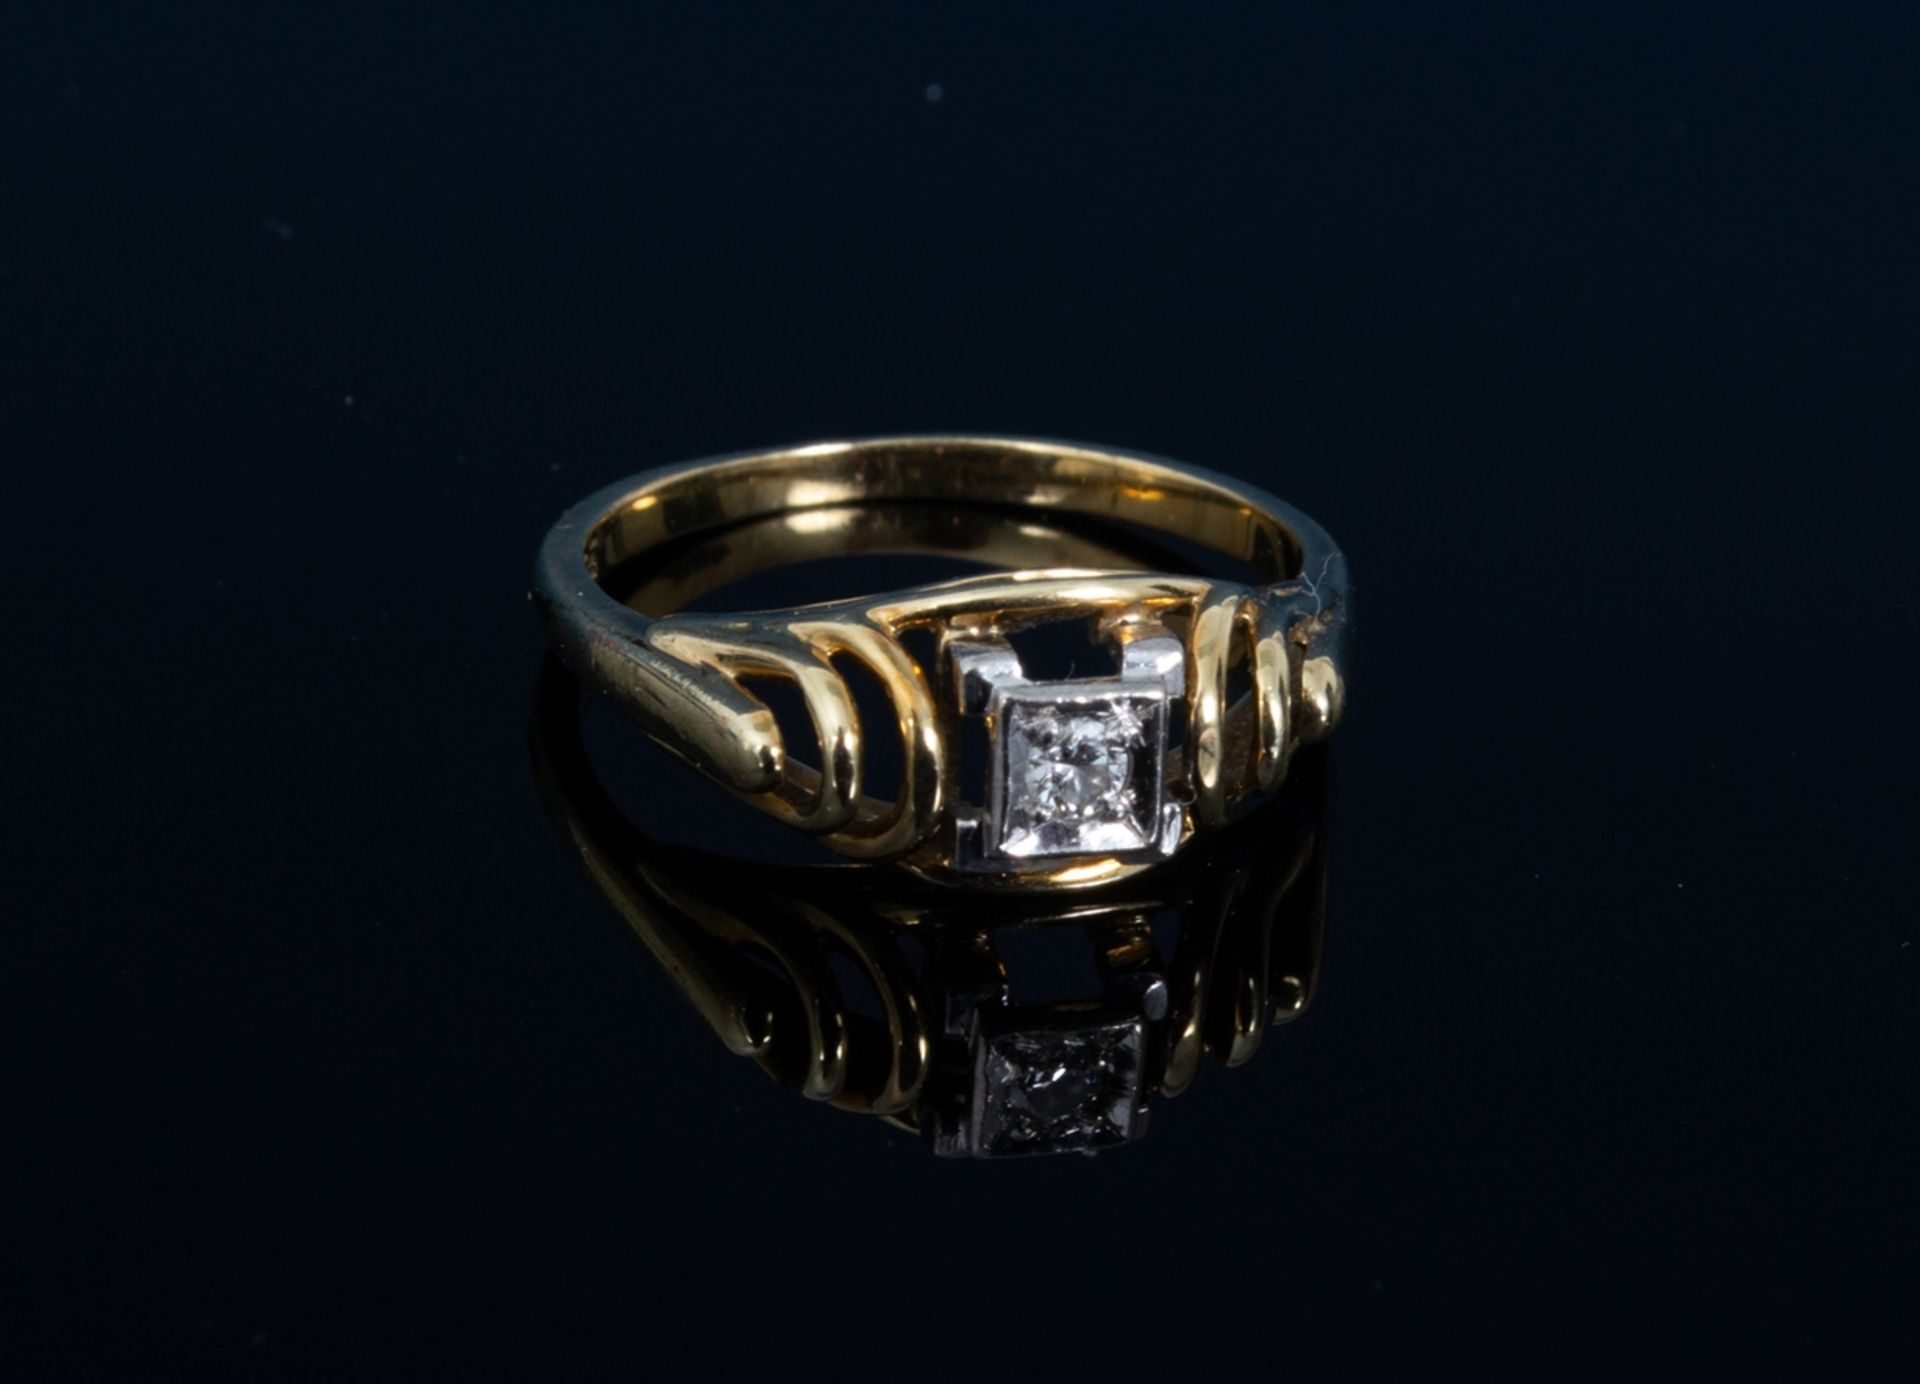 Goldener Ring mit Diamant besetzt, 585er Gelbgold, Diamant ca. 0,1 ct. Ringinnendurchmesser ca. 17 - Bild 6 aus 6